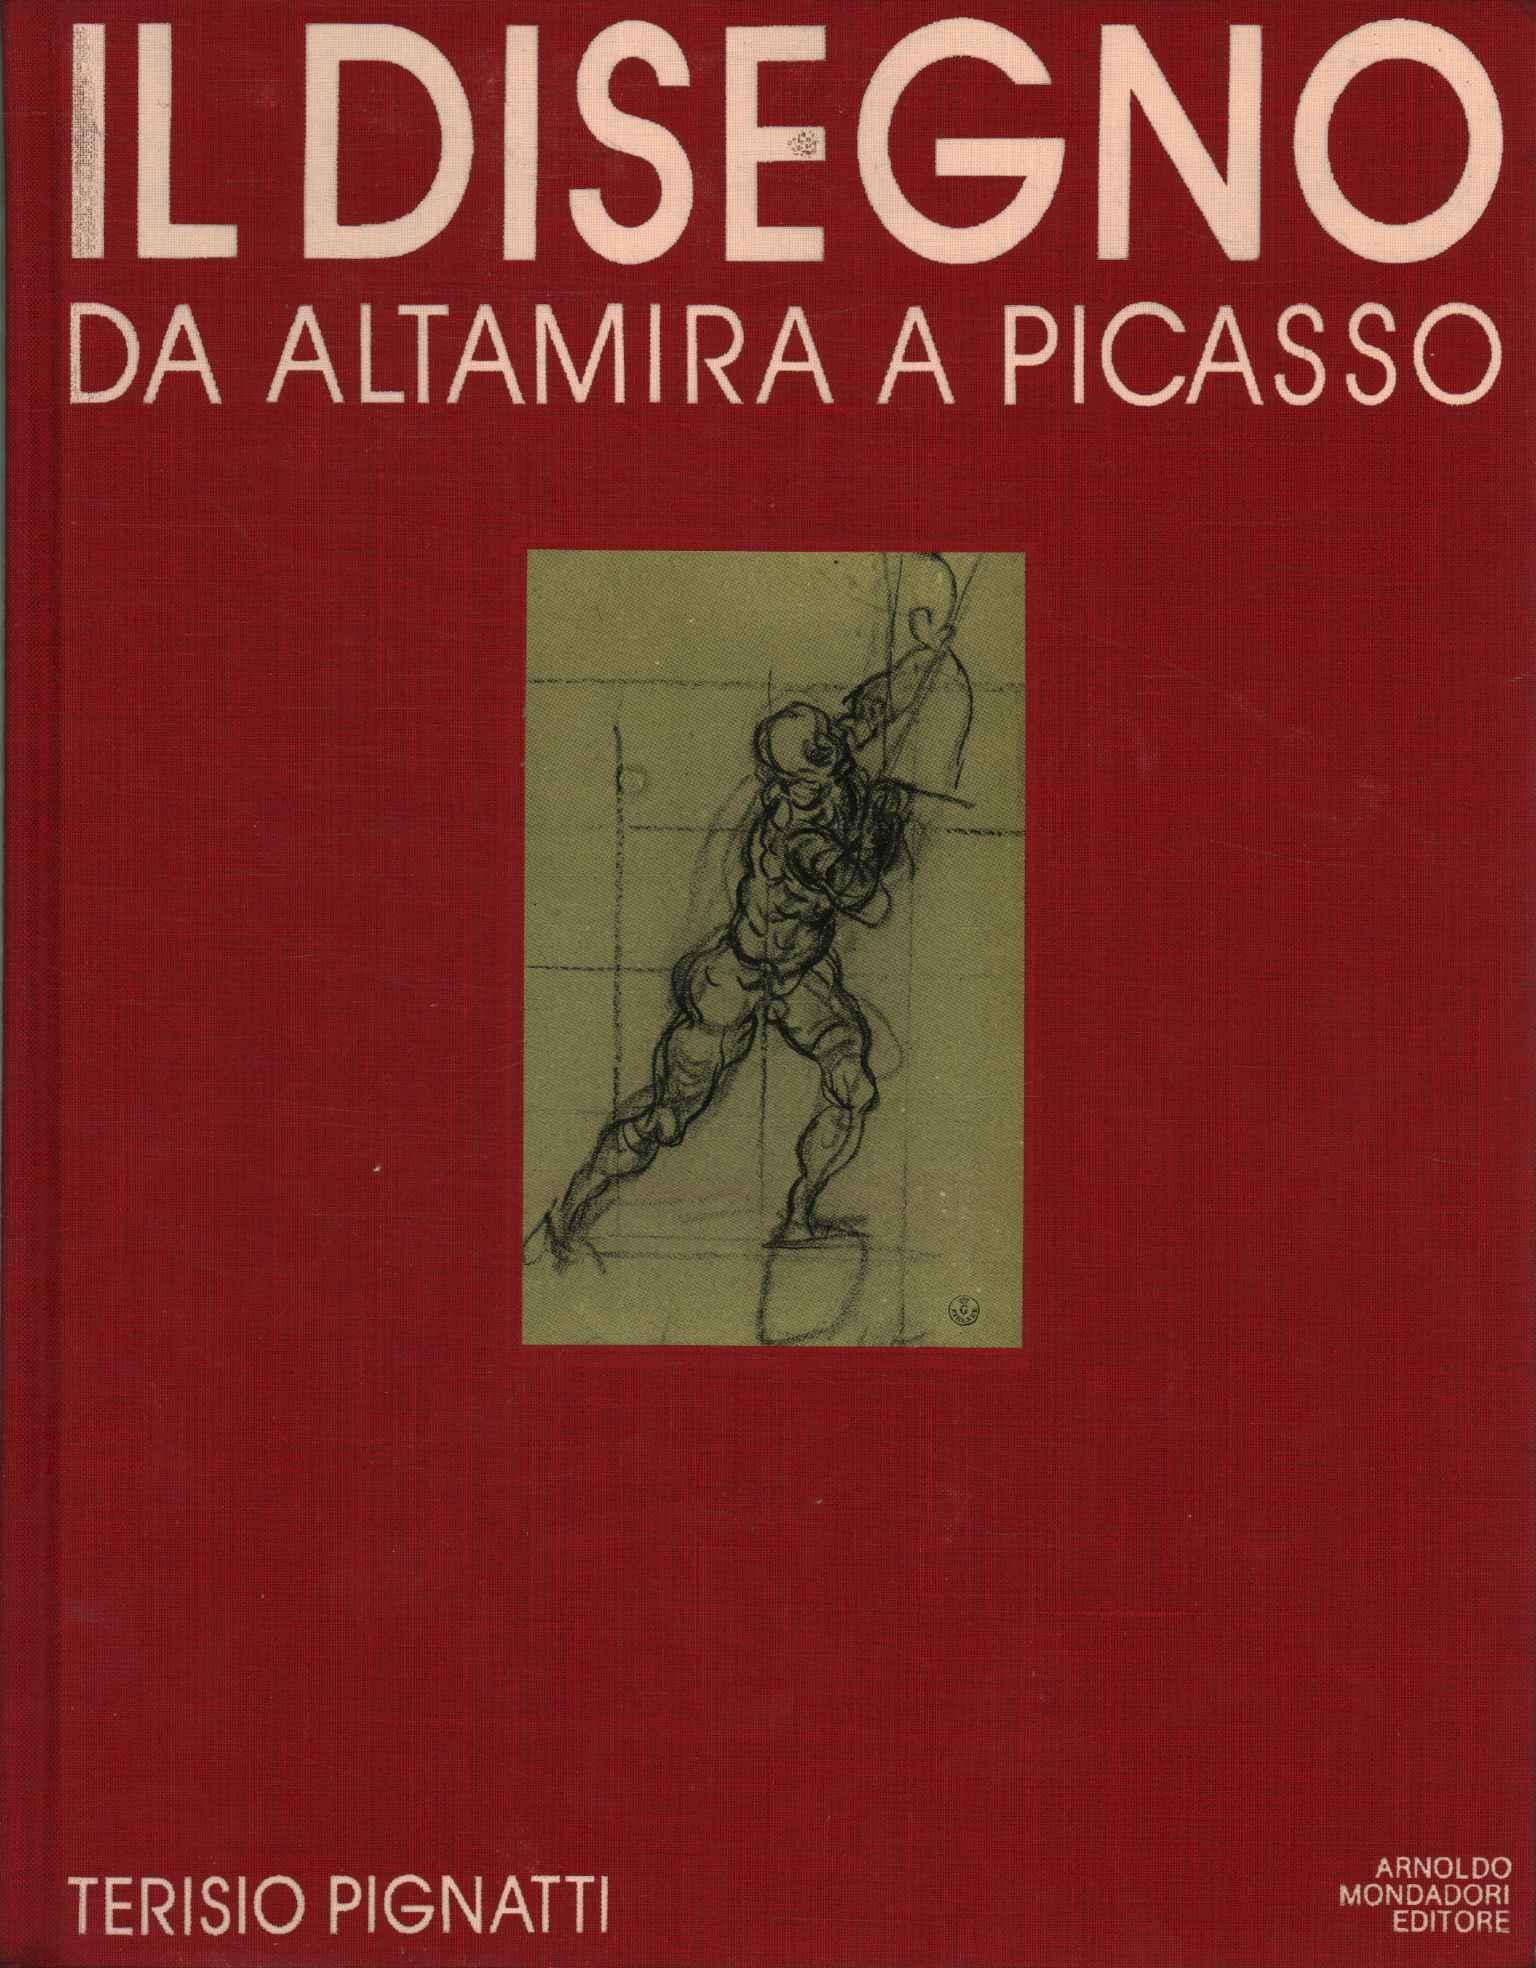 Zeichnung von Altamira bis Picasso